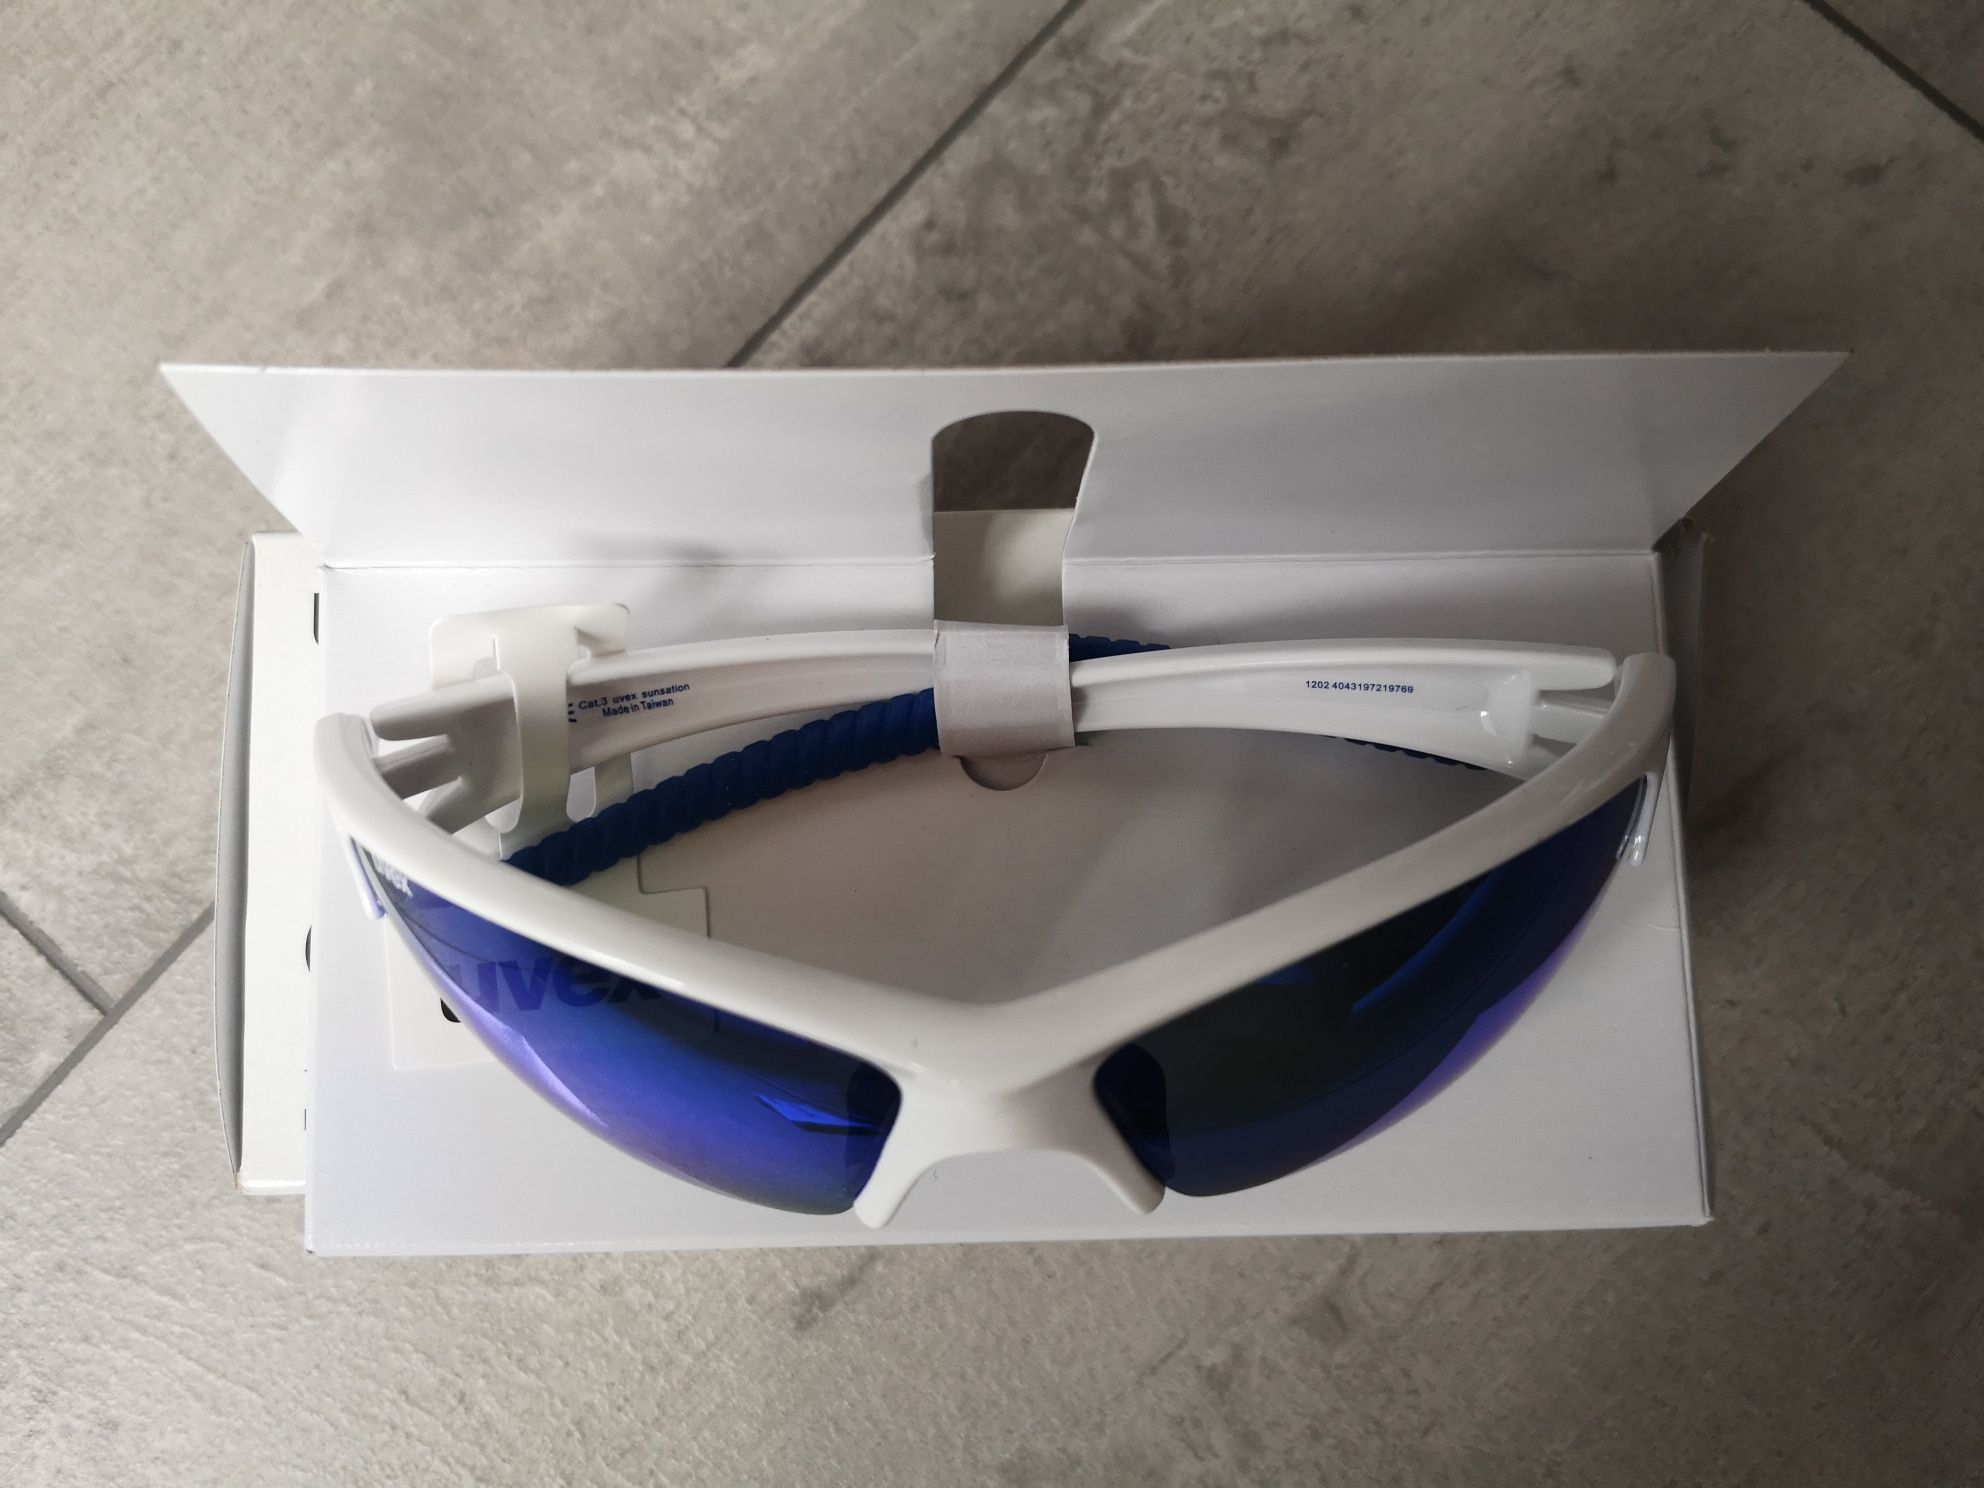 Okulary przeciwsłoneczne UVEX